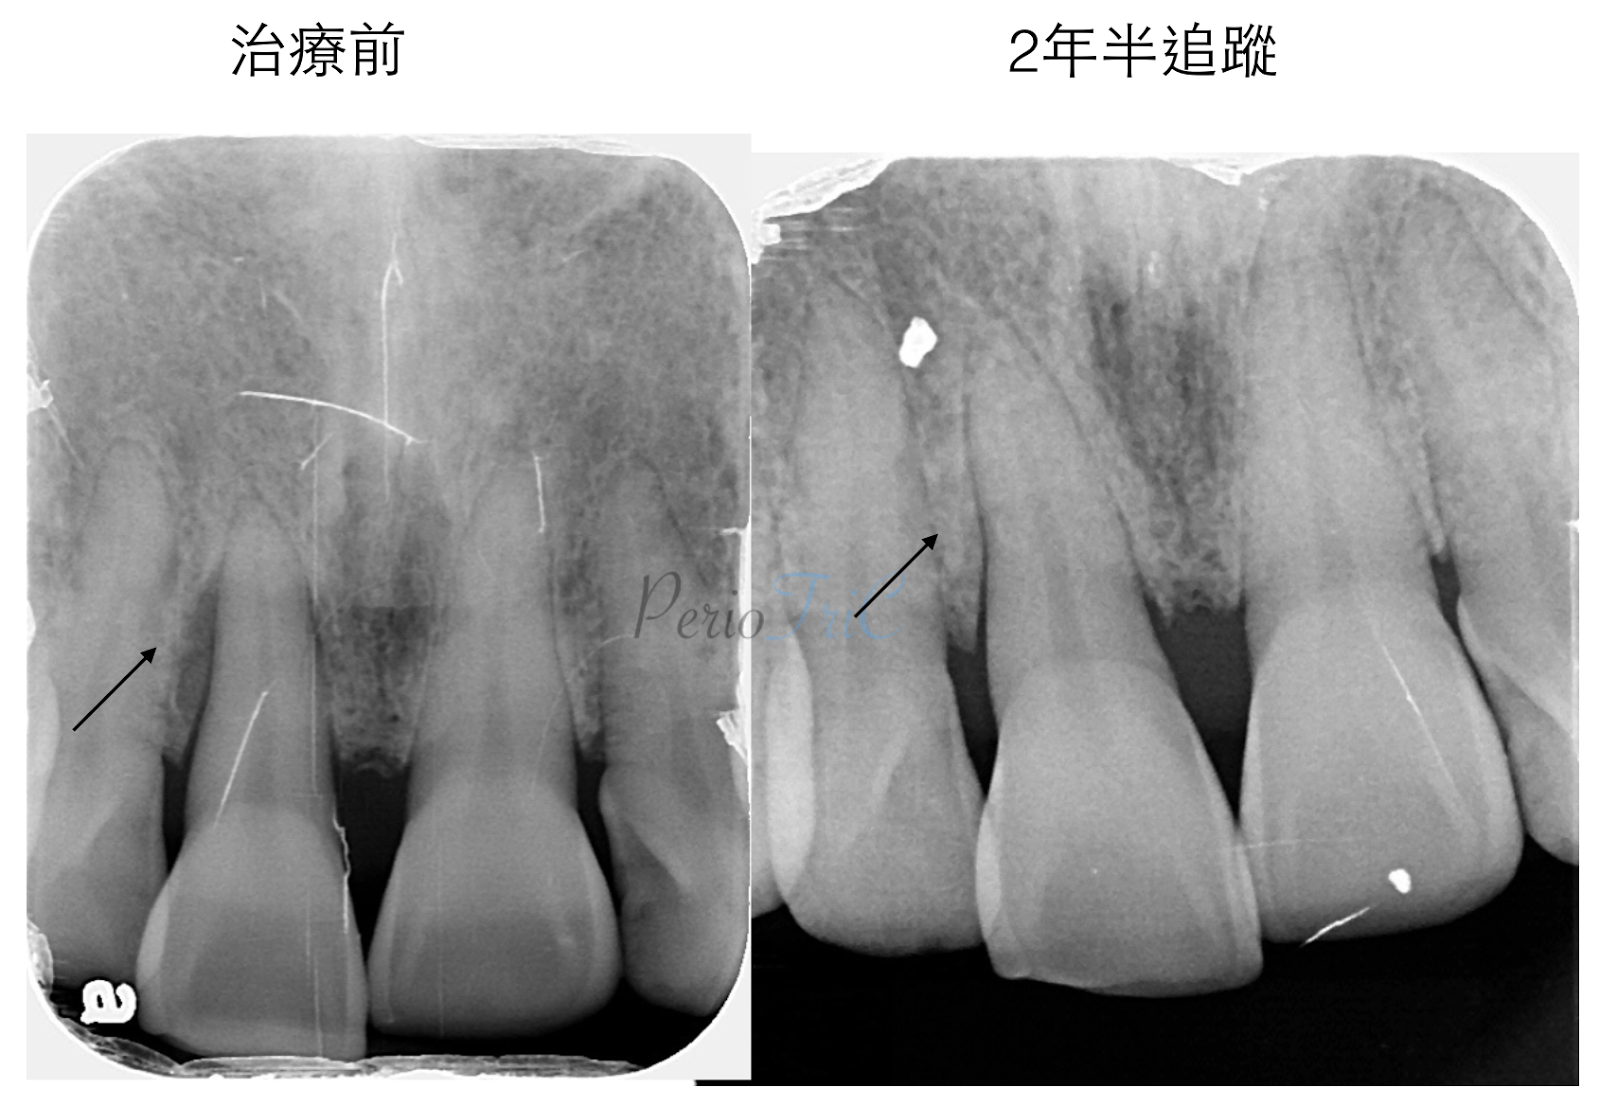 張志嘉 霹靂牙醫periotric 15